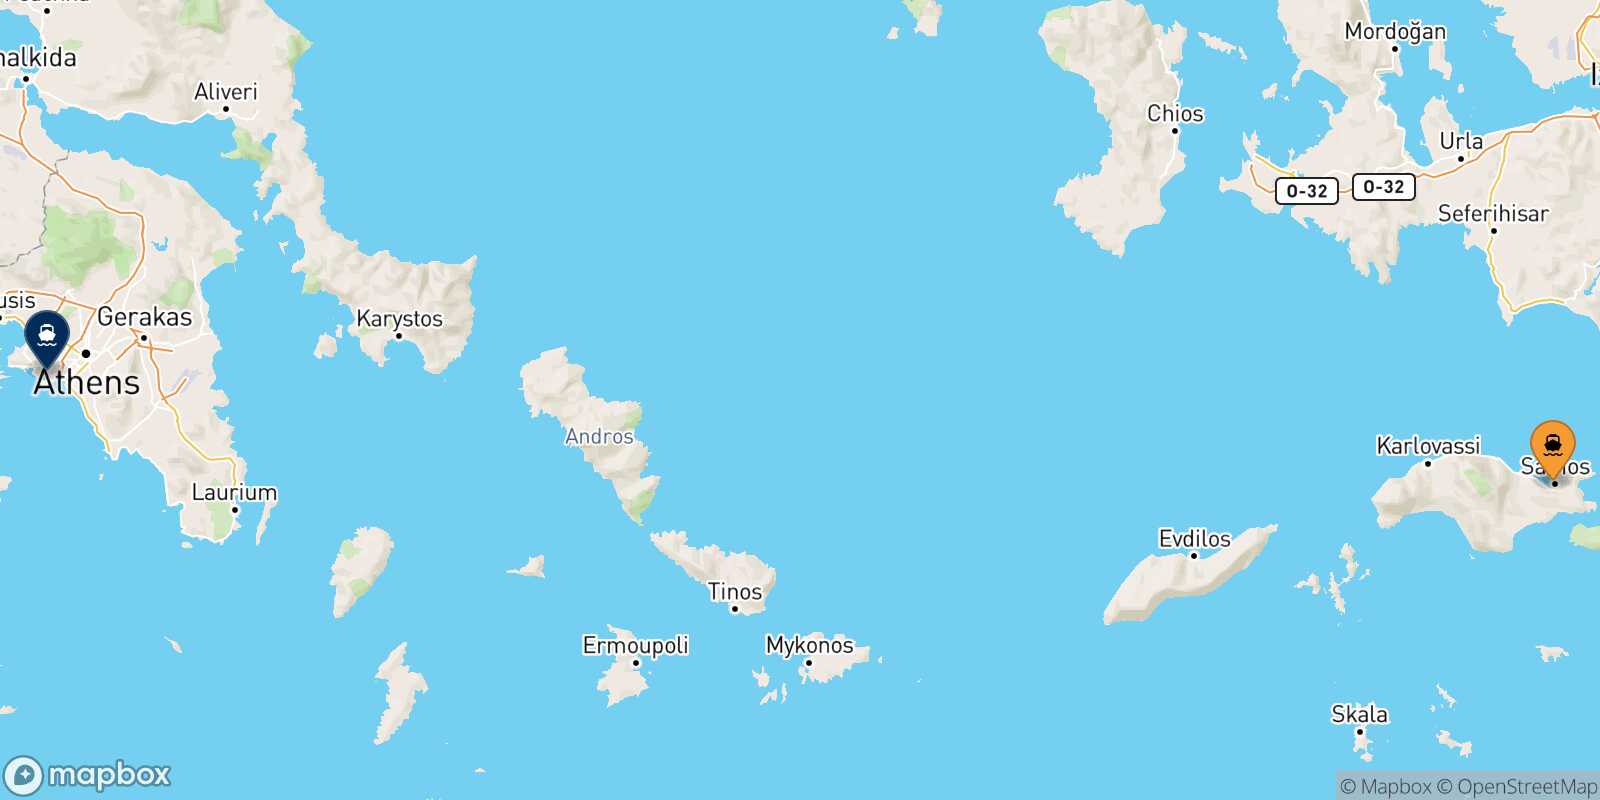 Vathi (Samos) Piraeus route map